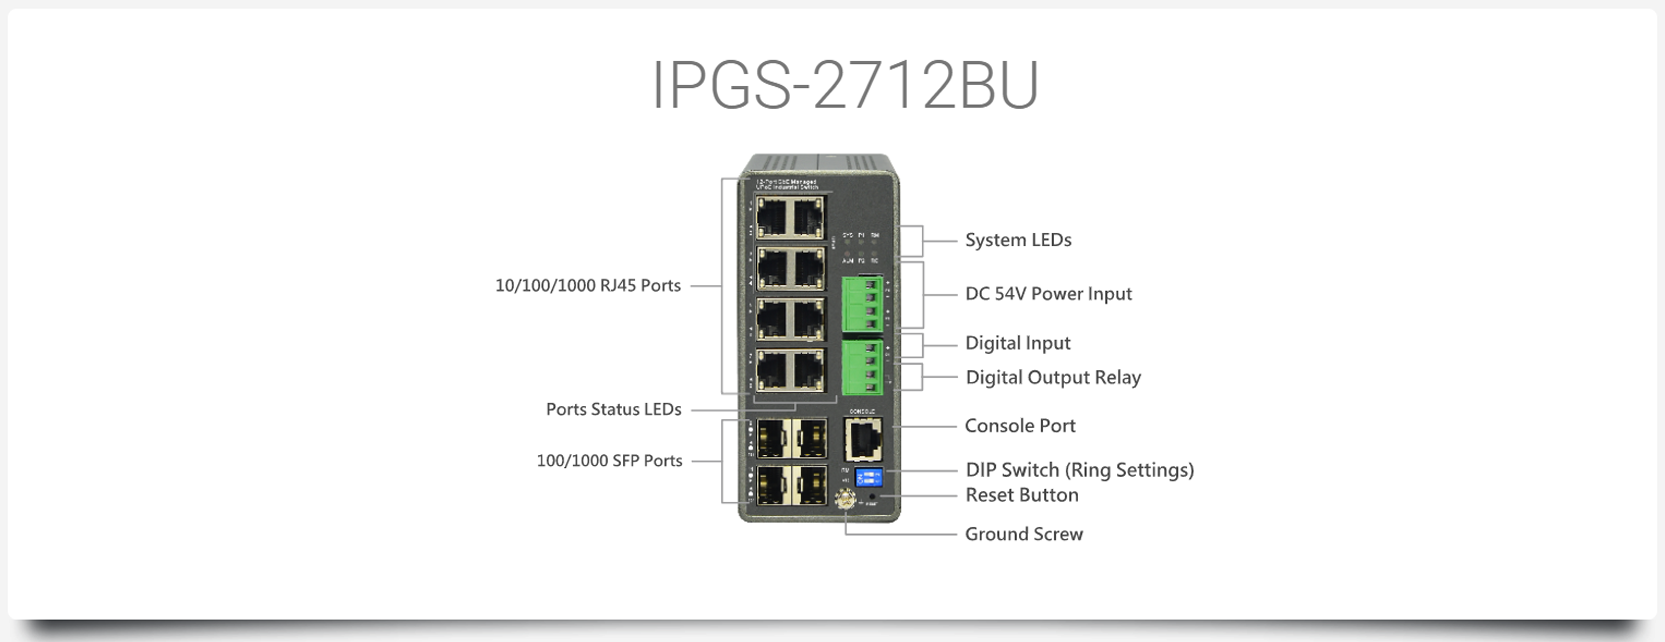 IPGS-2712BU